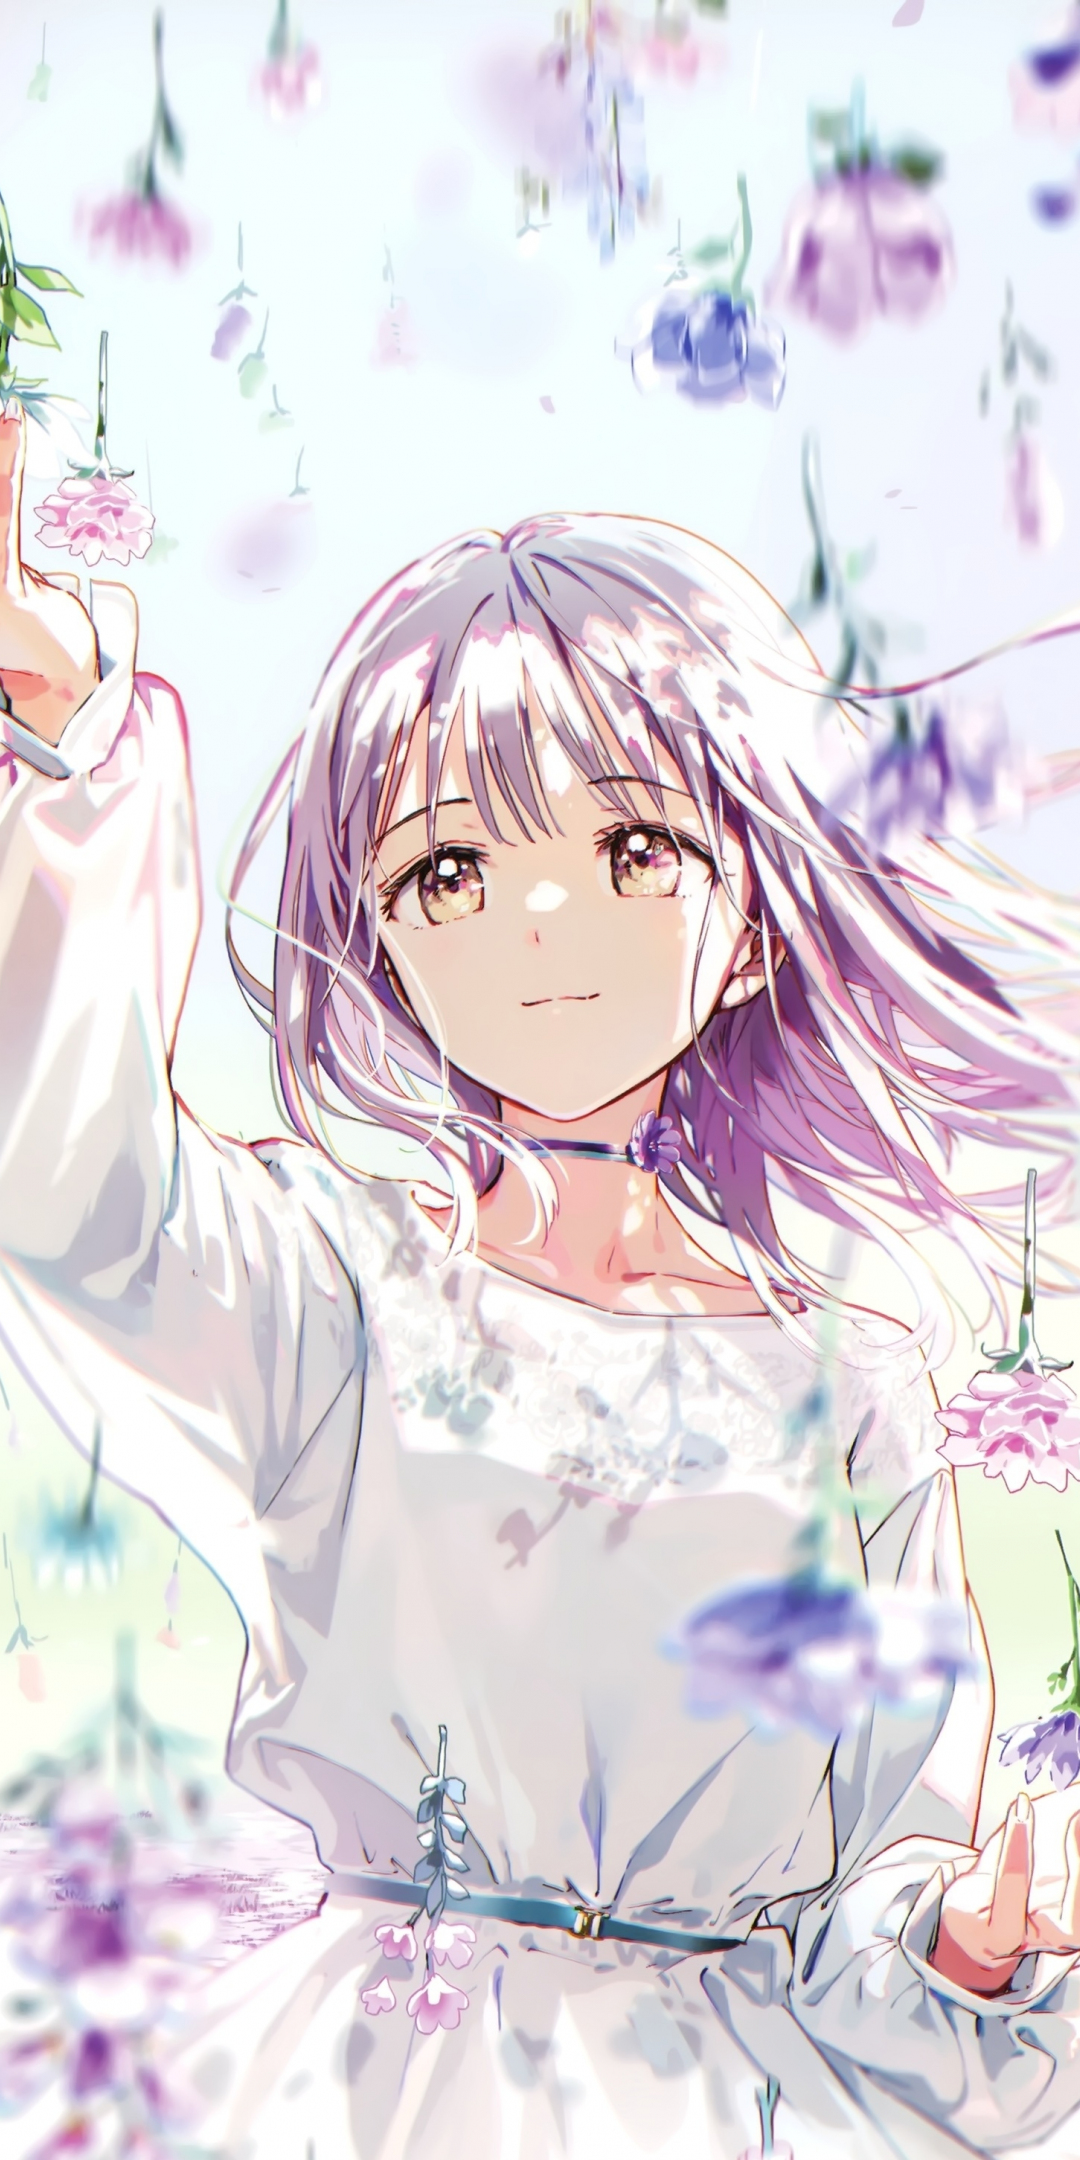 Blossom, flowers, anime girl, cute, 1080x2160 wallpaper